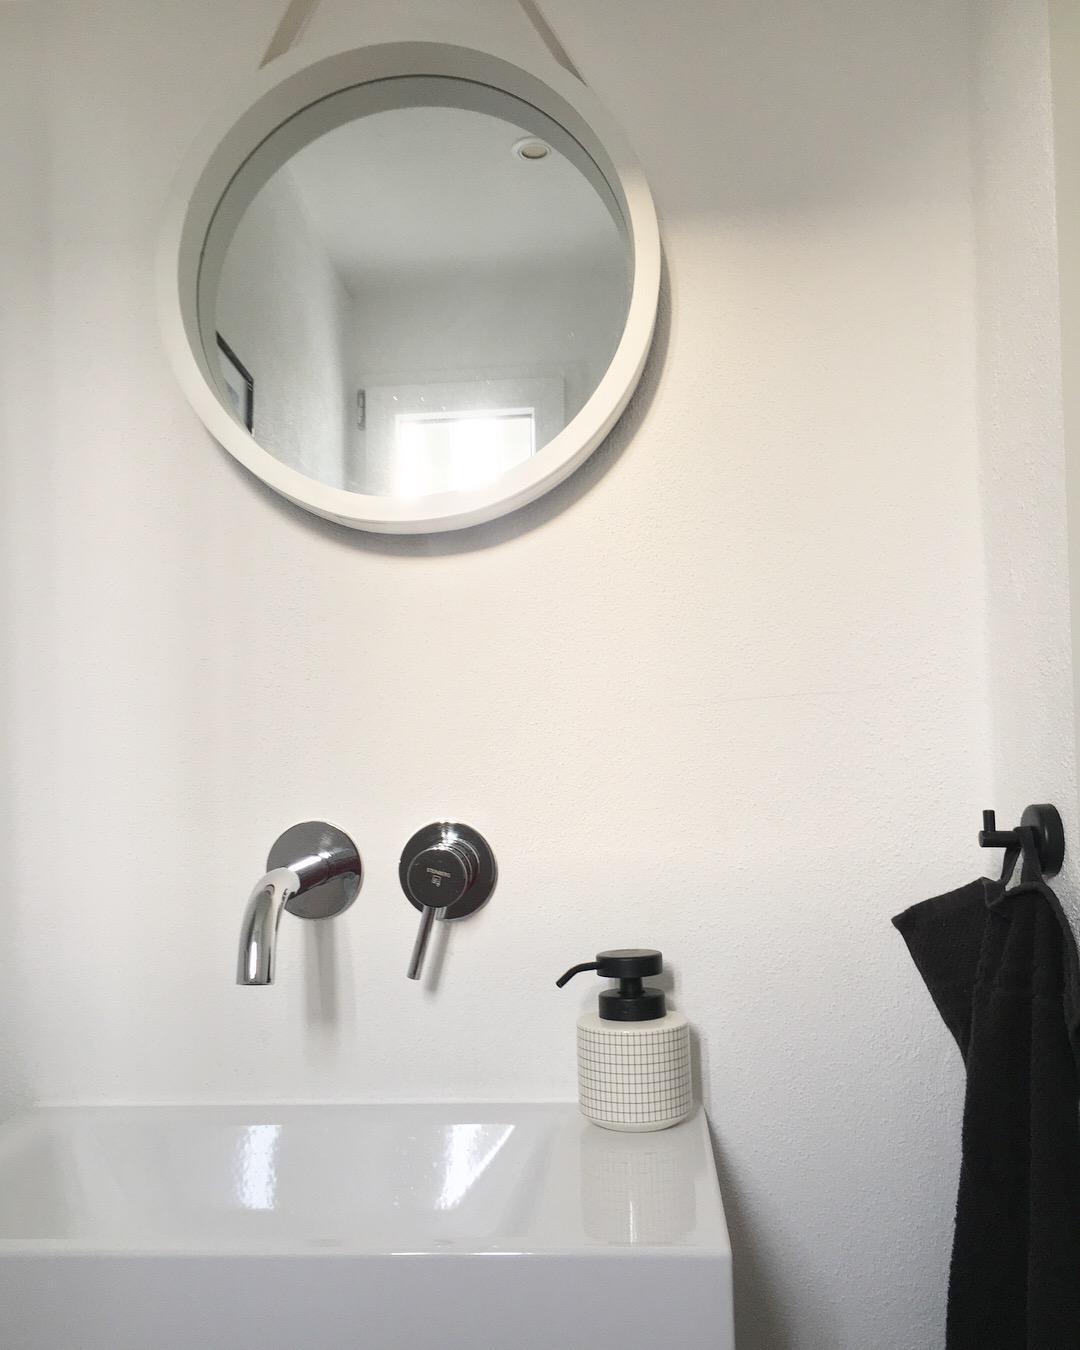 #gästewc #handwaschbecken #kleineswc #renoviert #spiegel #seifenspender #blackandwhite #schwarzweiss #armatur